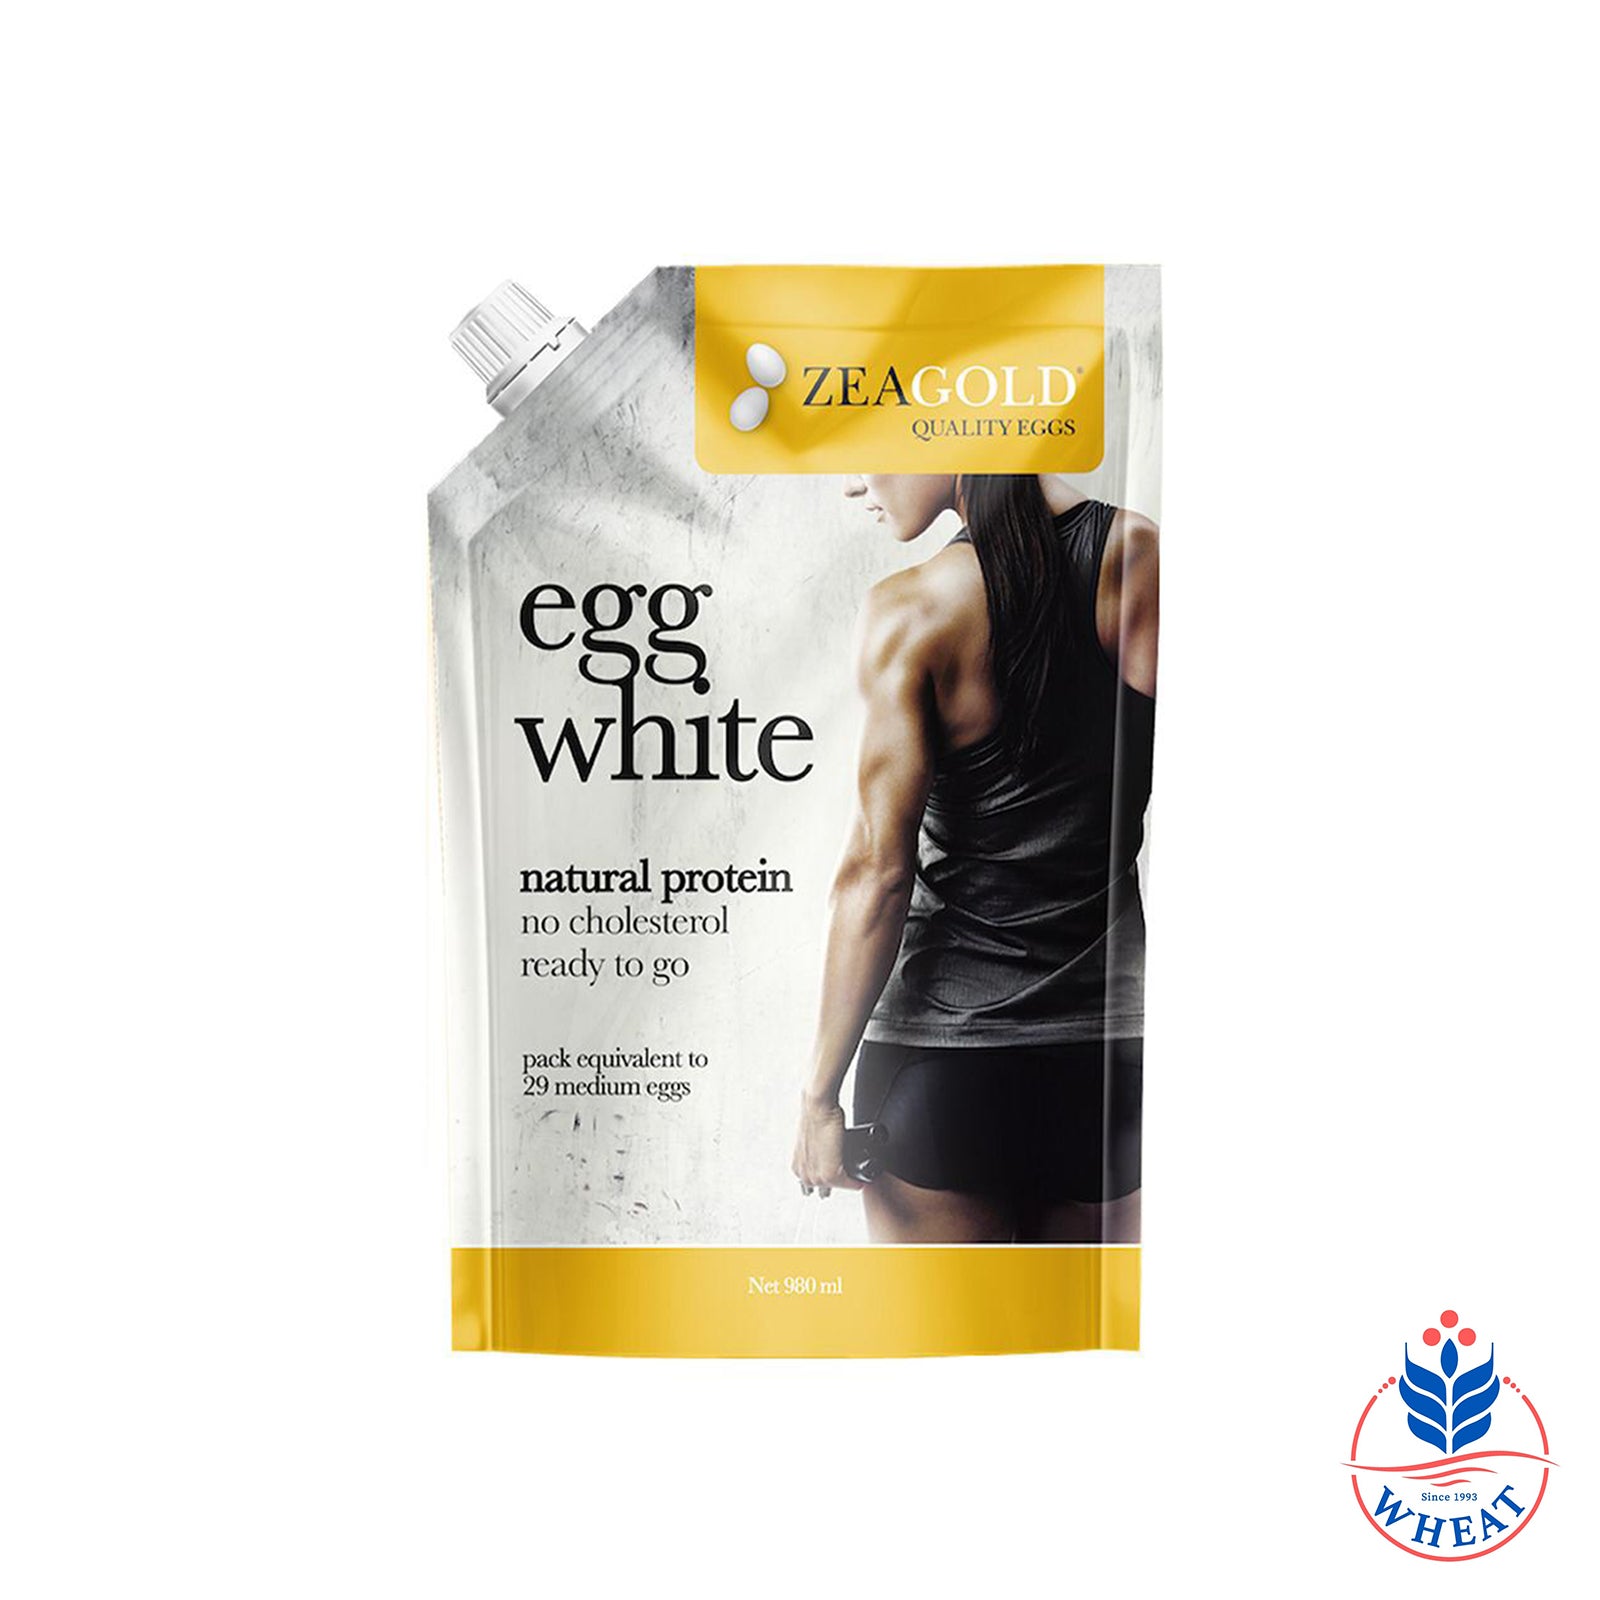 Zeagold Egg White 980ml